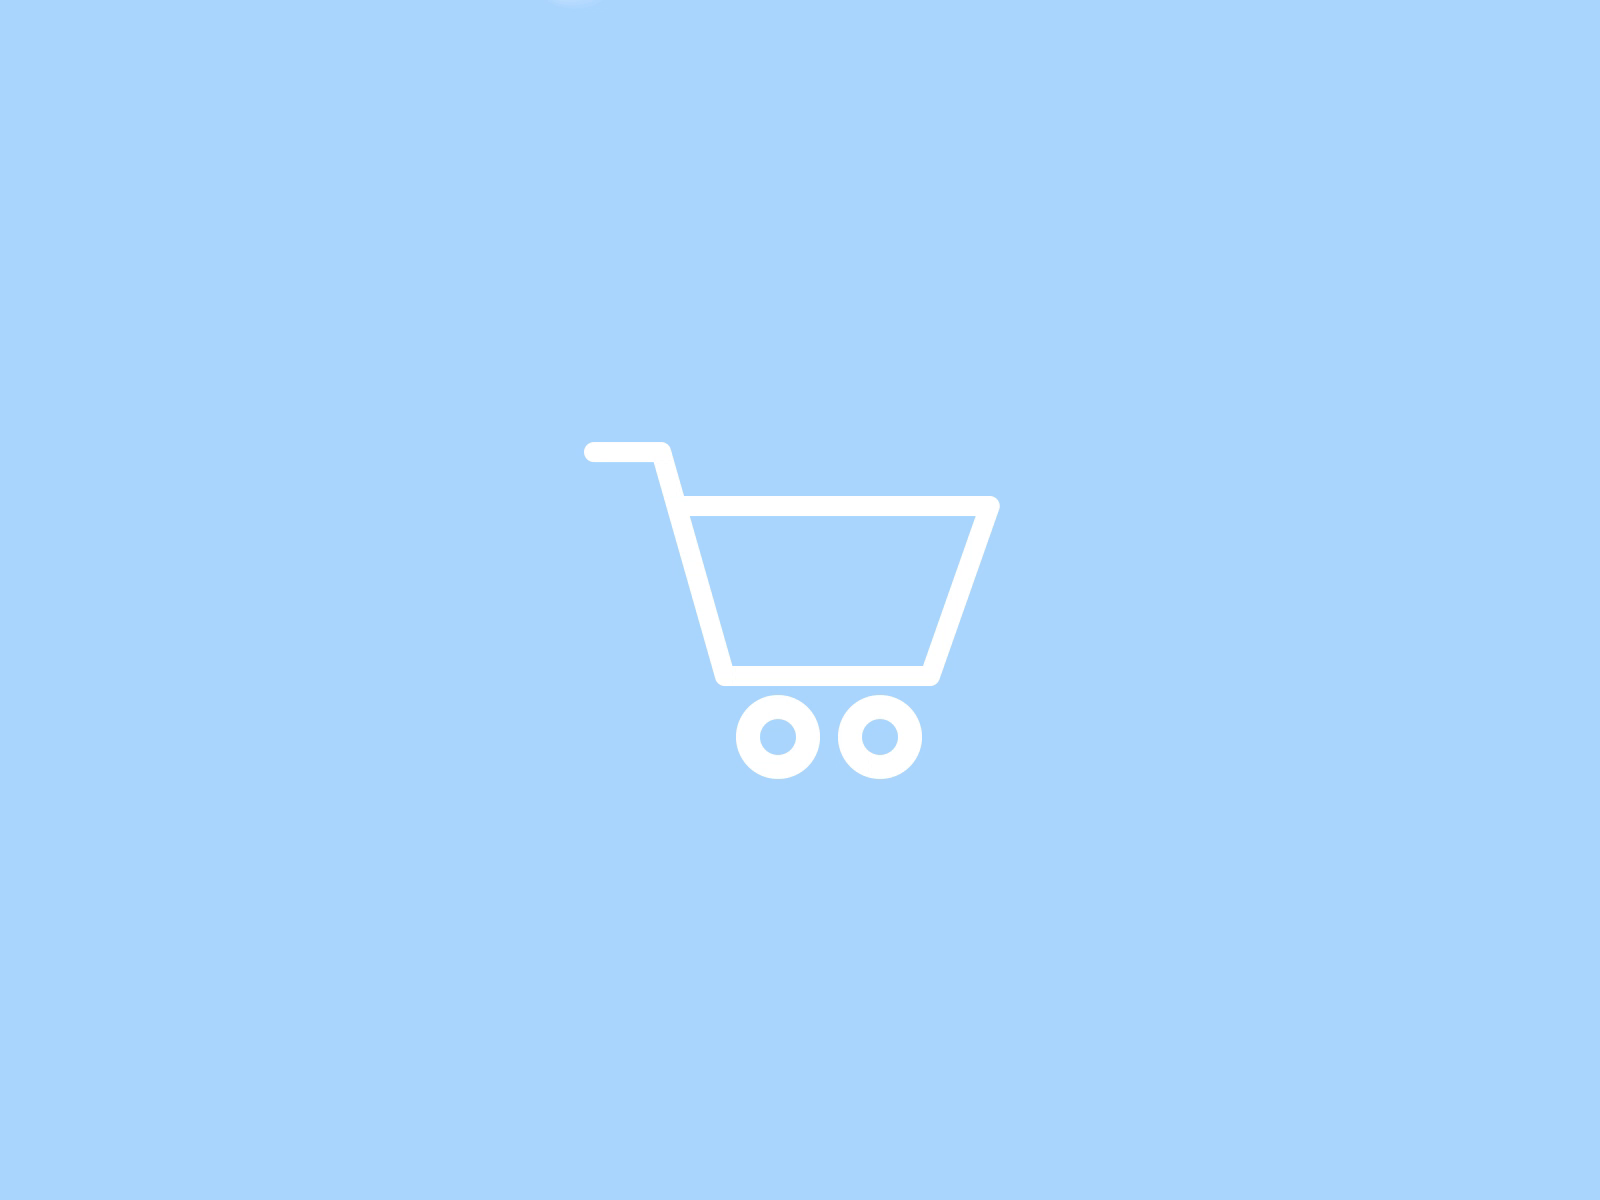 Daily UI 058 - Shopping cart